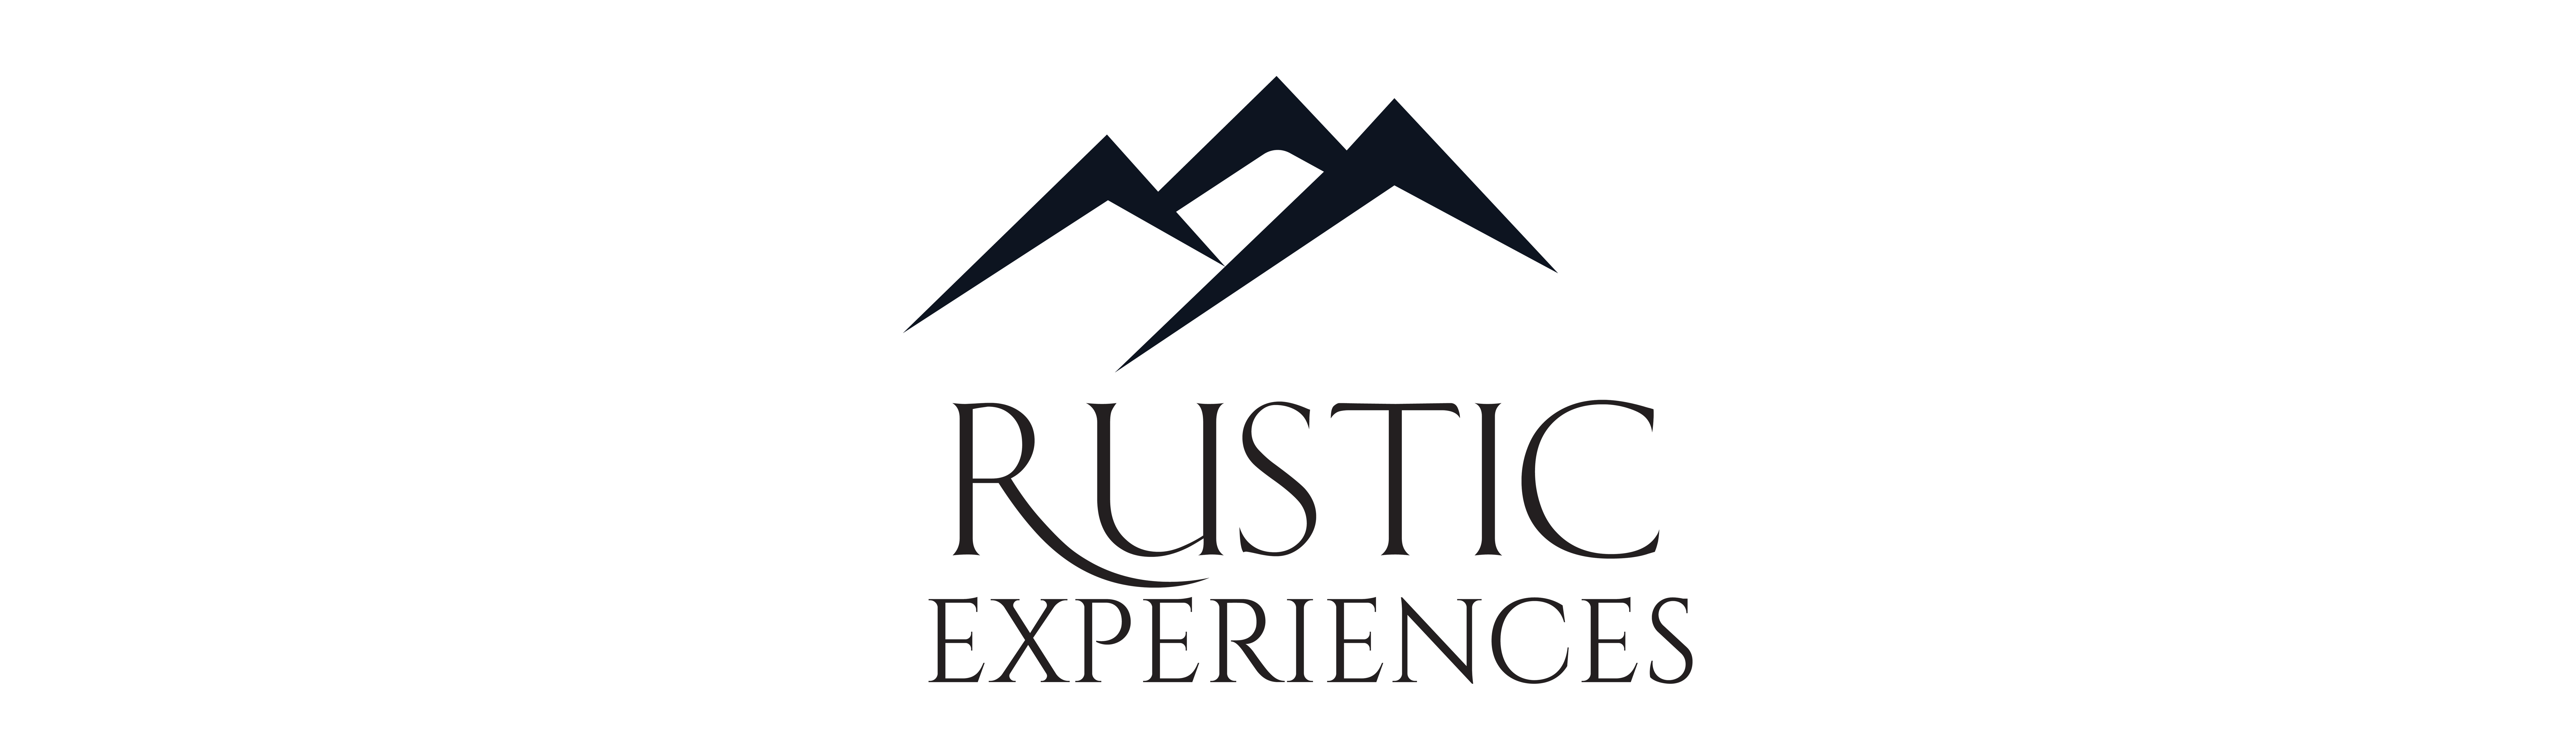 Rustic-Experiences